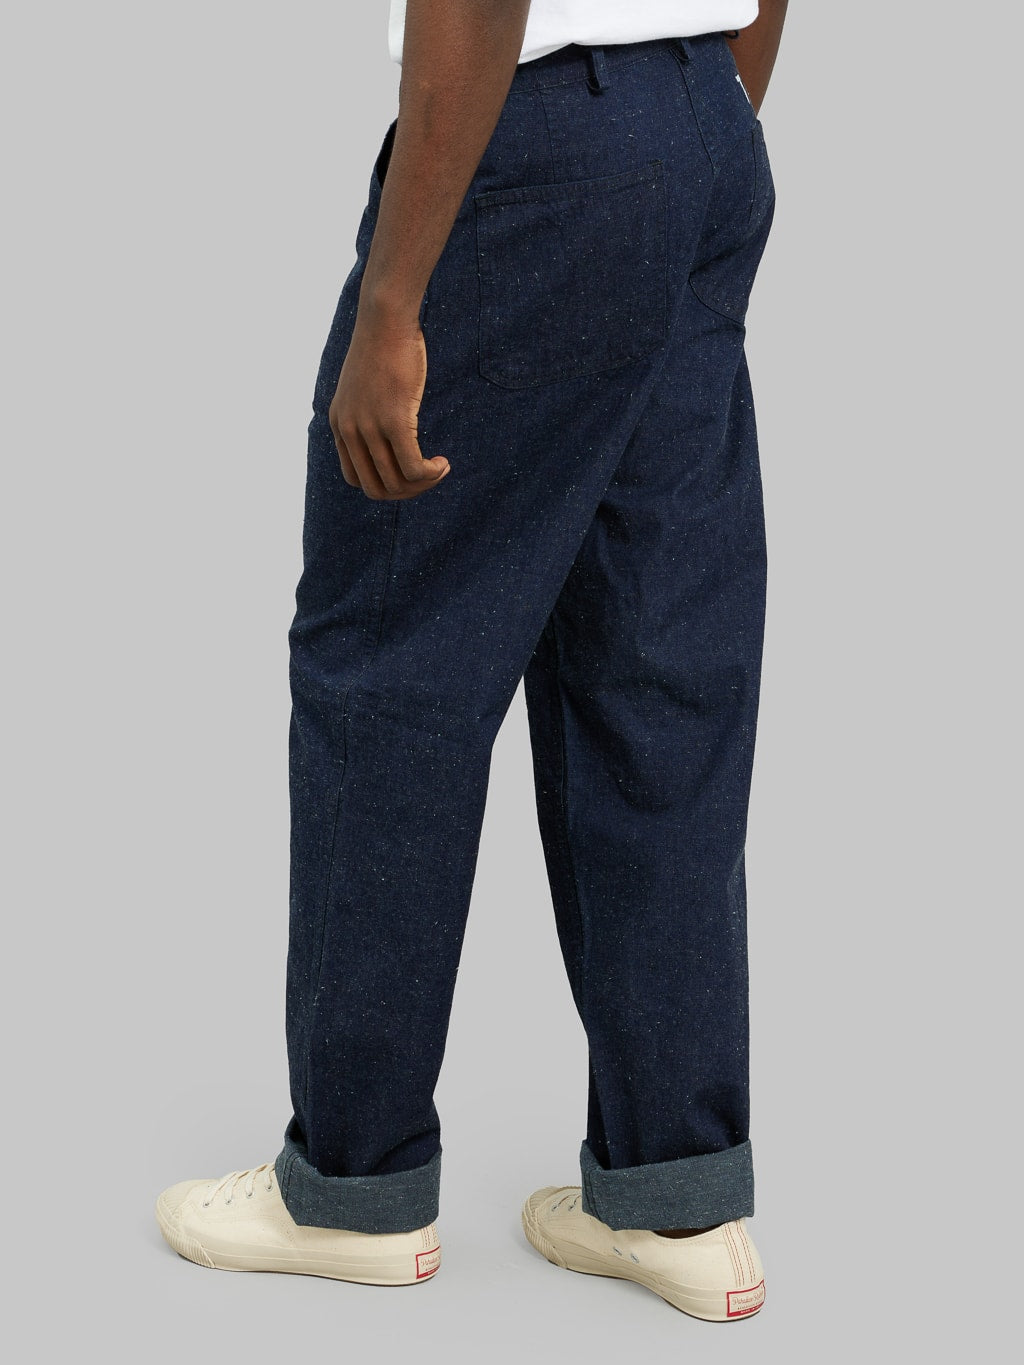 tcb jeans usn seamens denim trousers straight fit